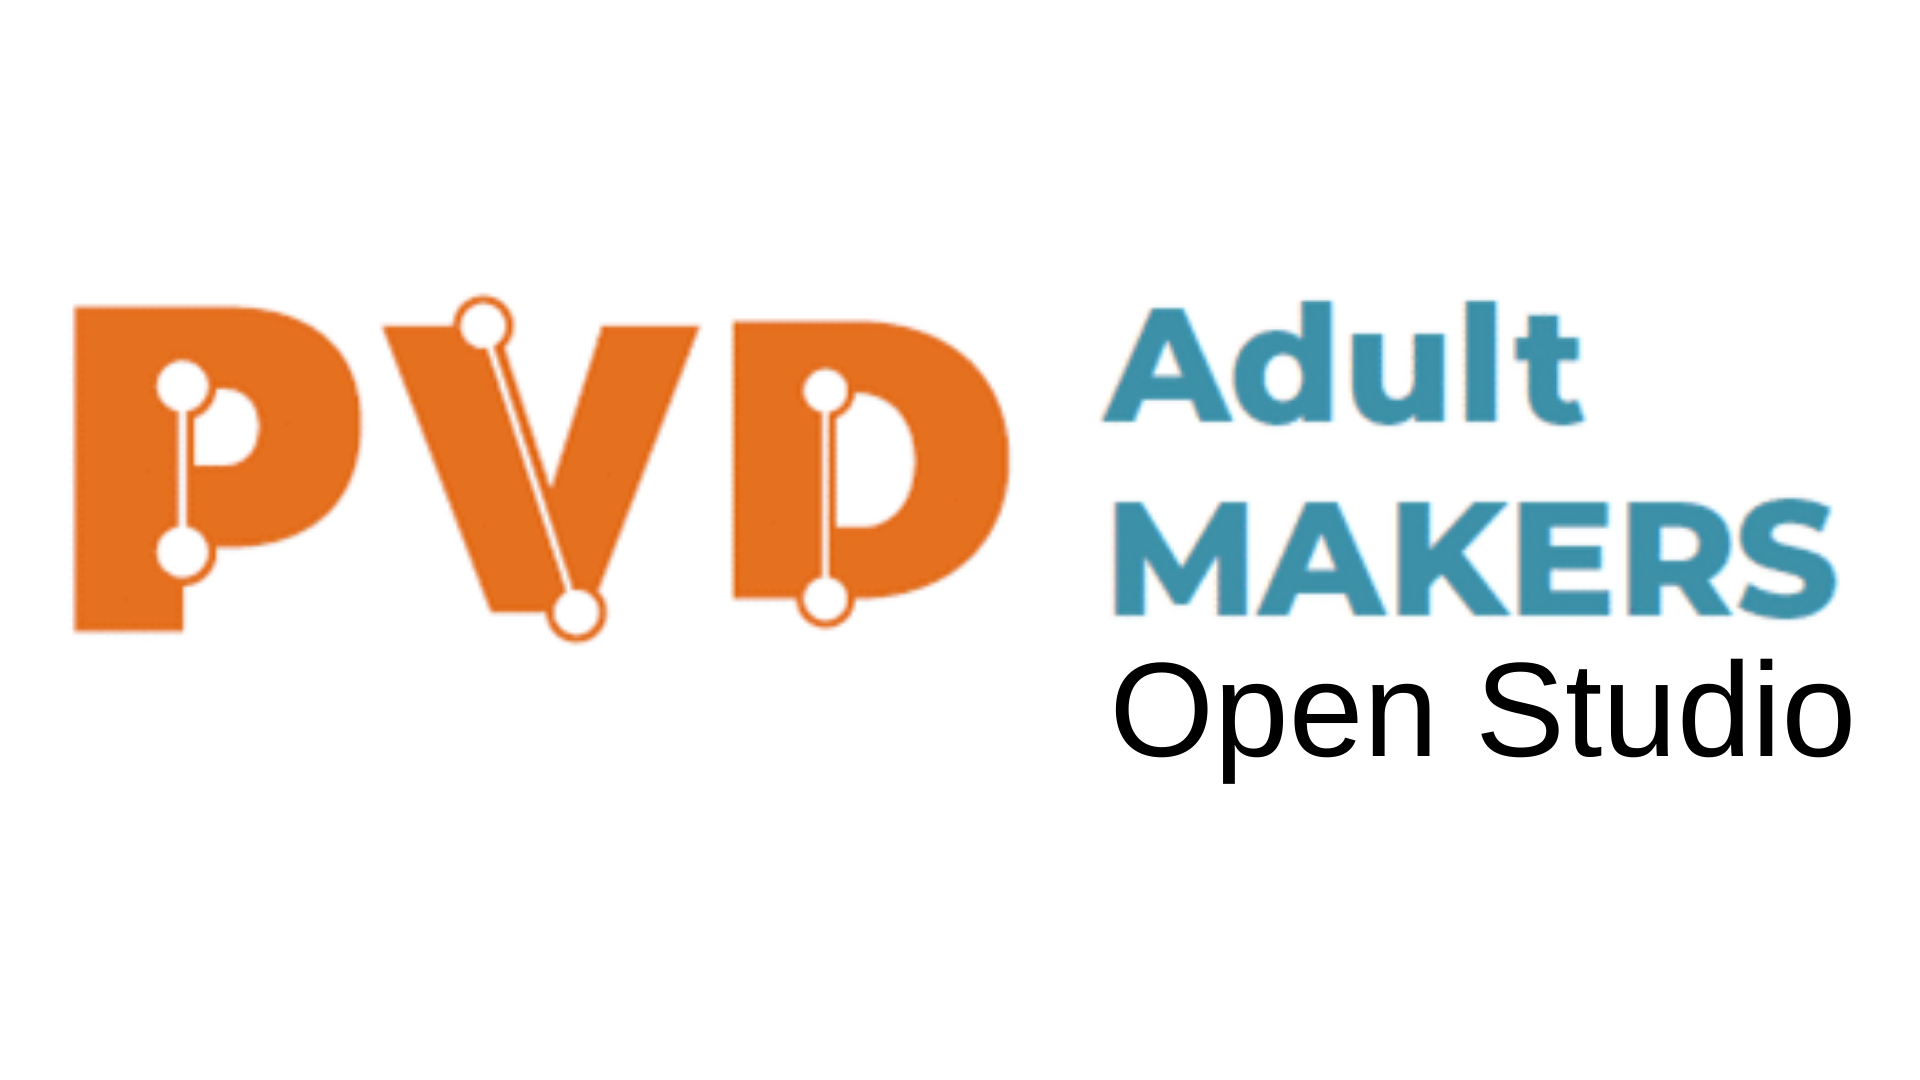 Adult Makers Open Studio